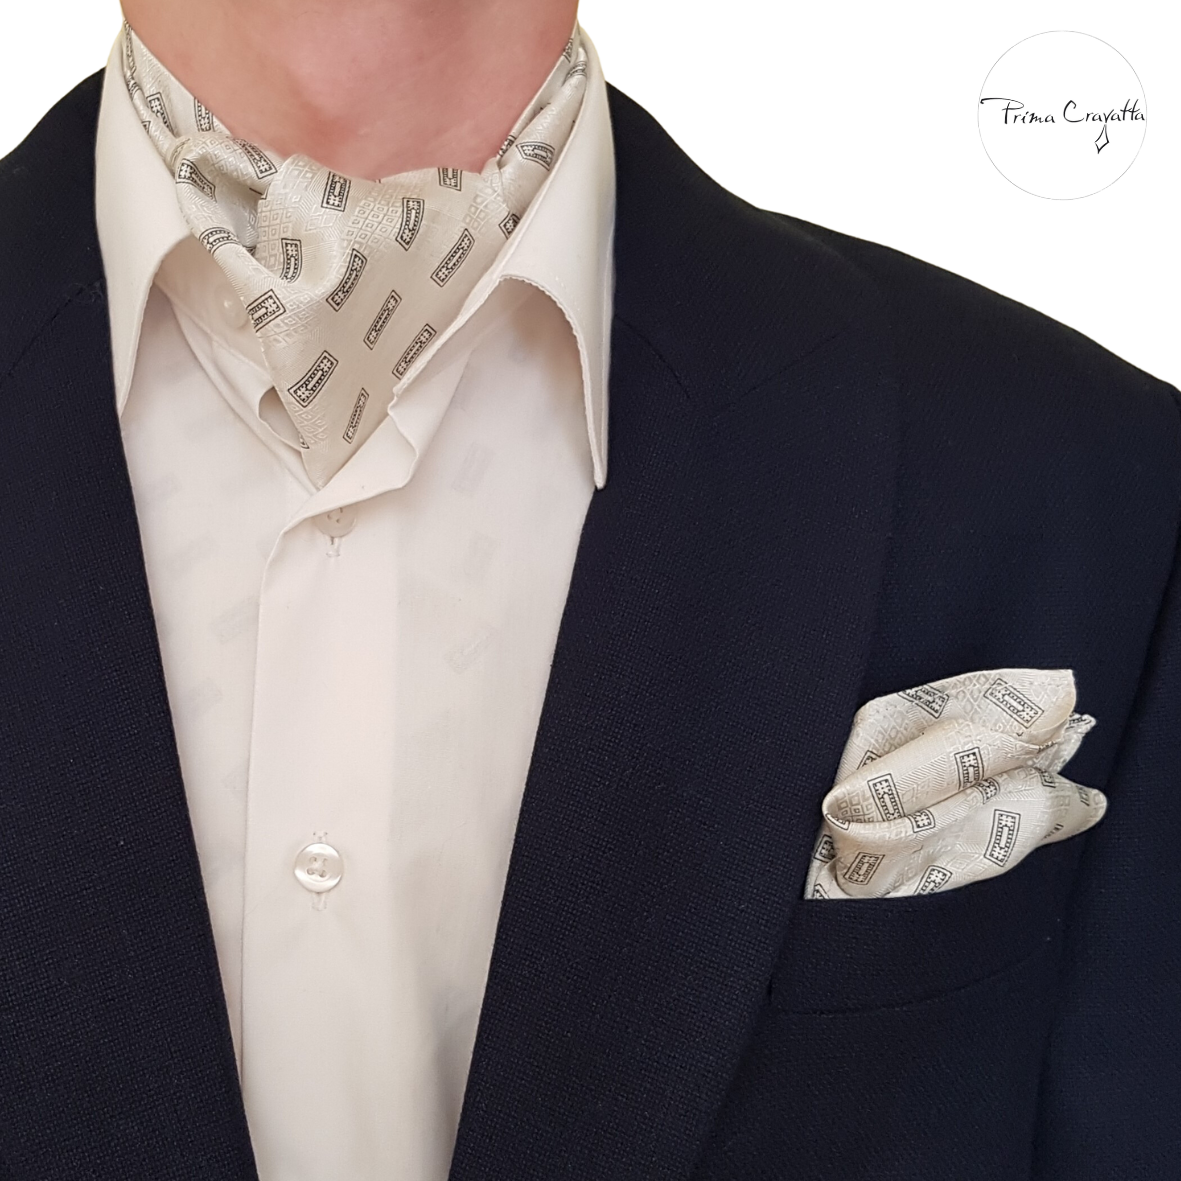 Prima Cravatta Casual ehk meeste lühike kravatt Laurencio de Abierto koos pintsaku ilurätiga Laurencio